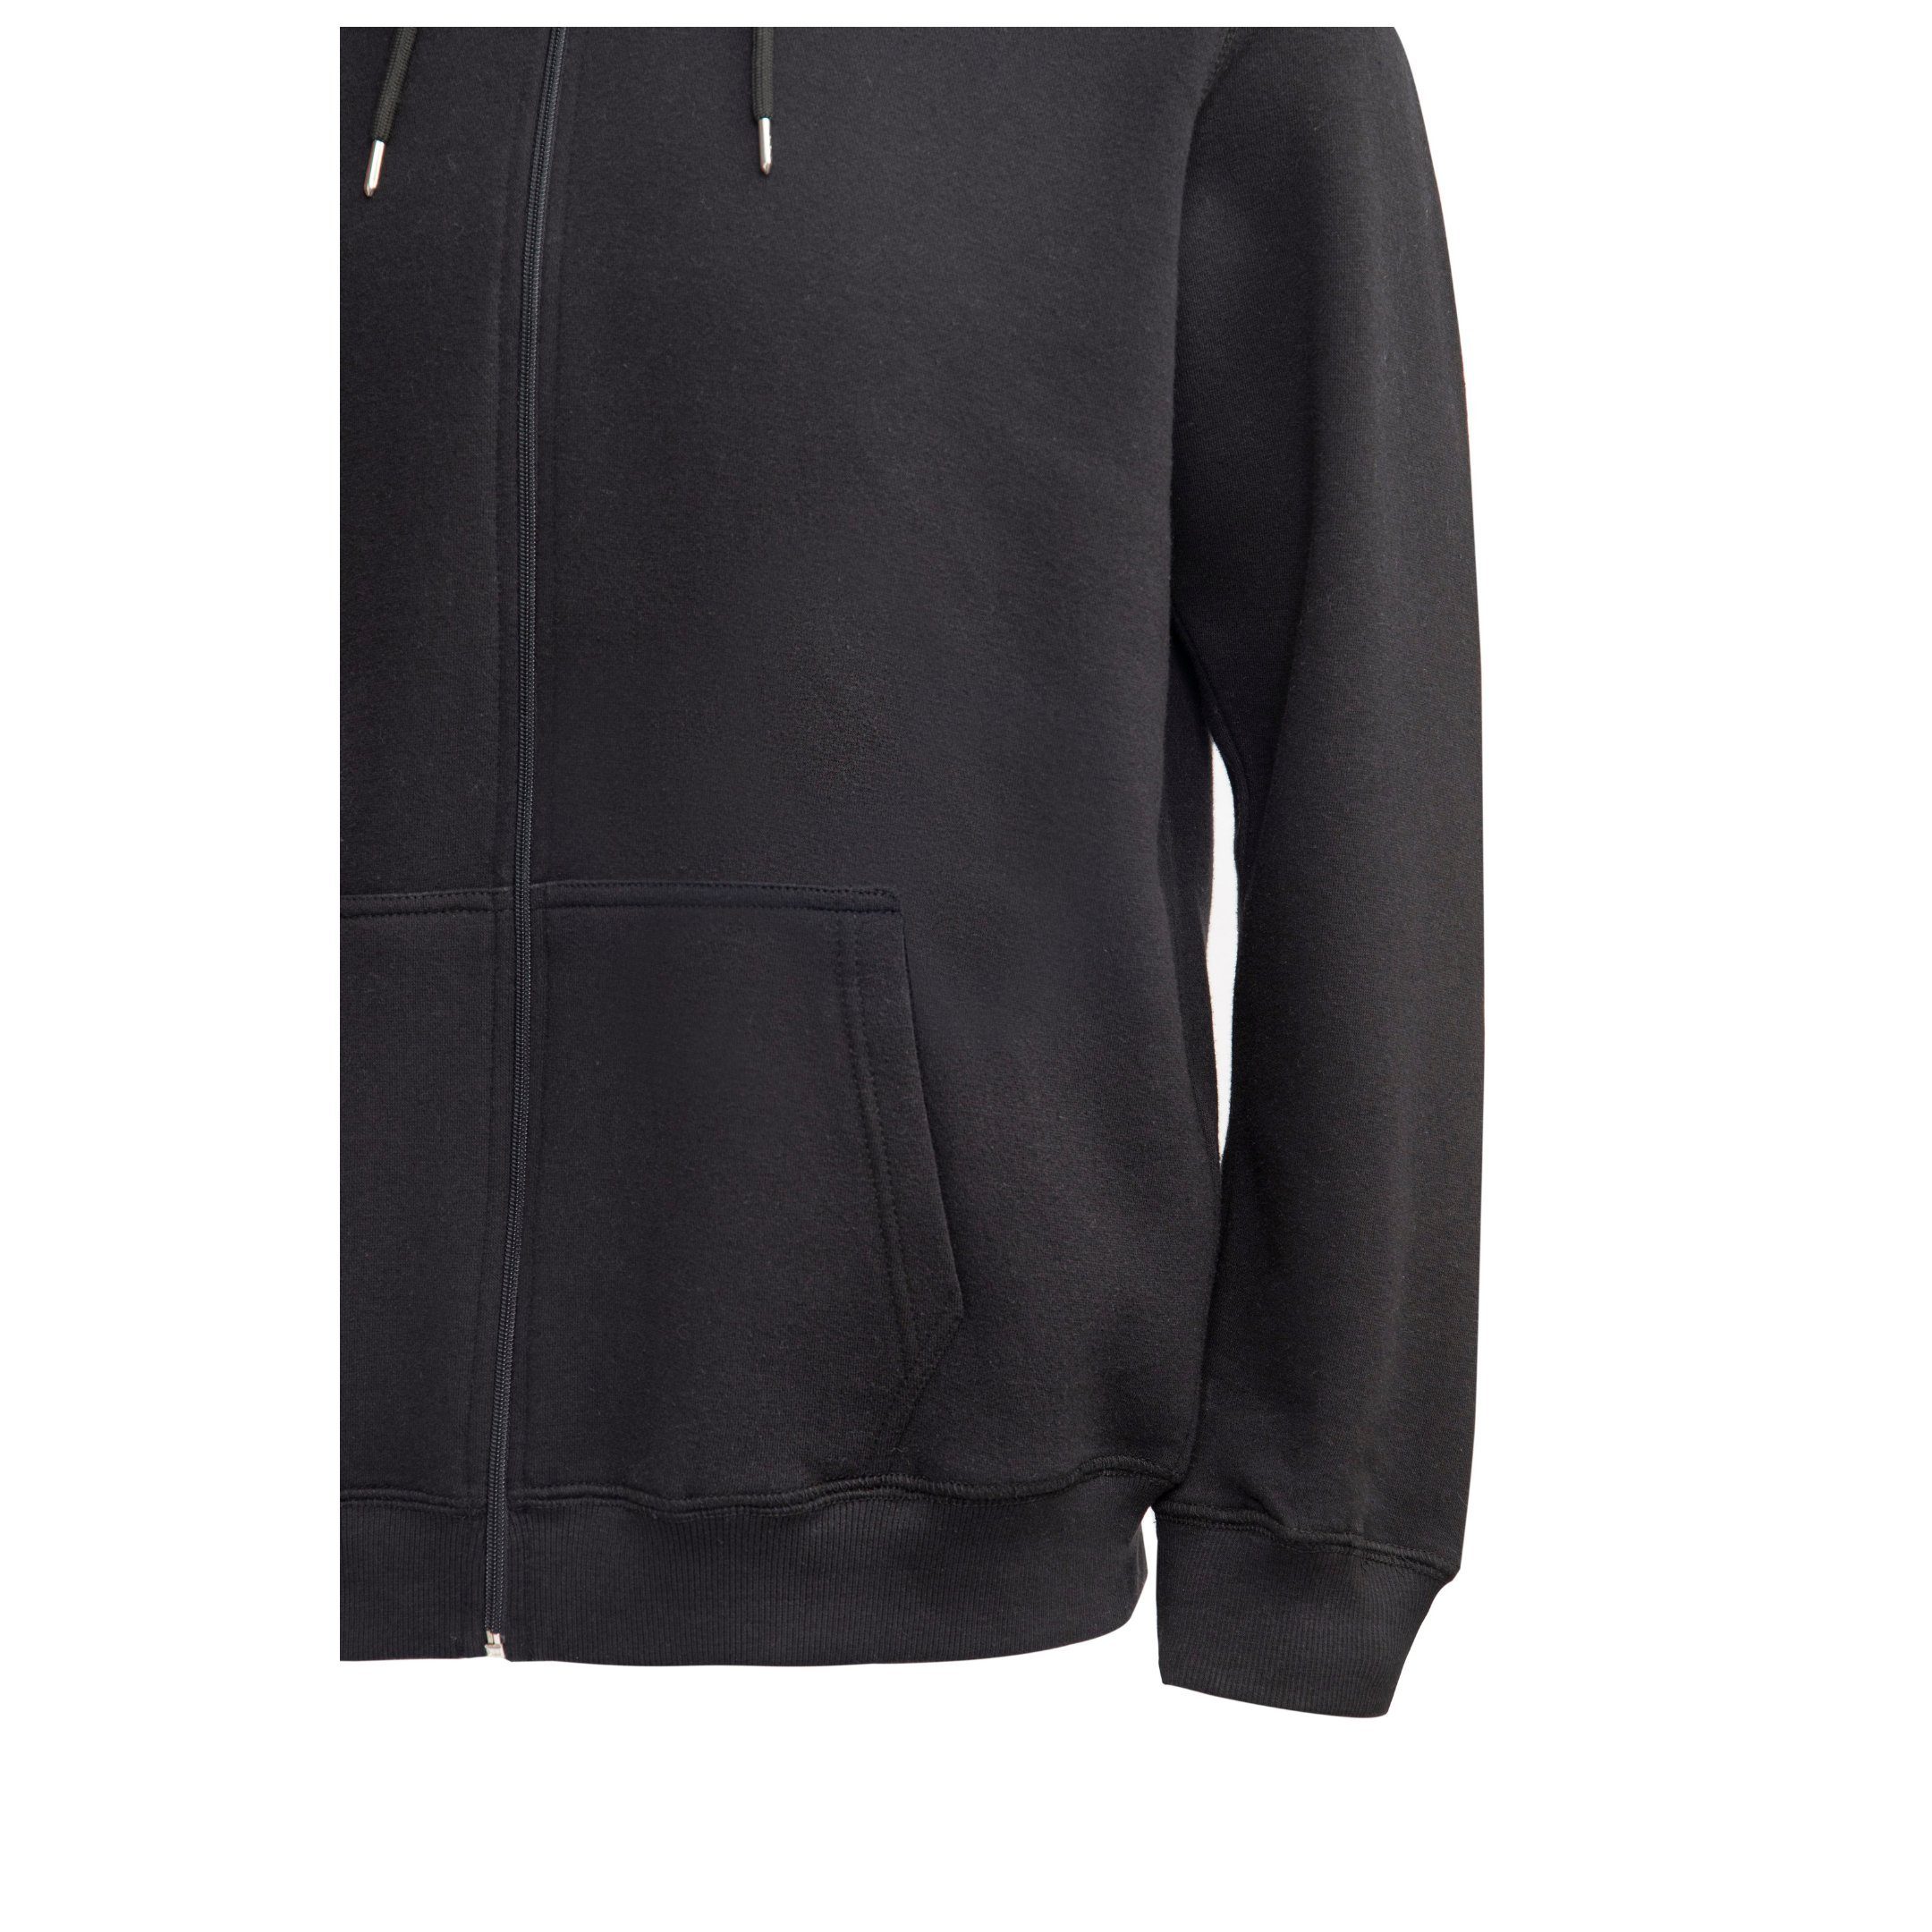 L mit Sweatshirt Schwarz Uni-Farben, - Reißverschluss, M Kapuze Herrensweatjacke, XXL Zestri Sweatshirtjacke mit Sweatshirt, Herren S XL Pullover